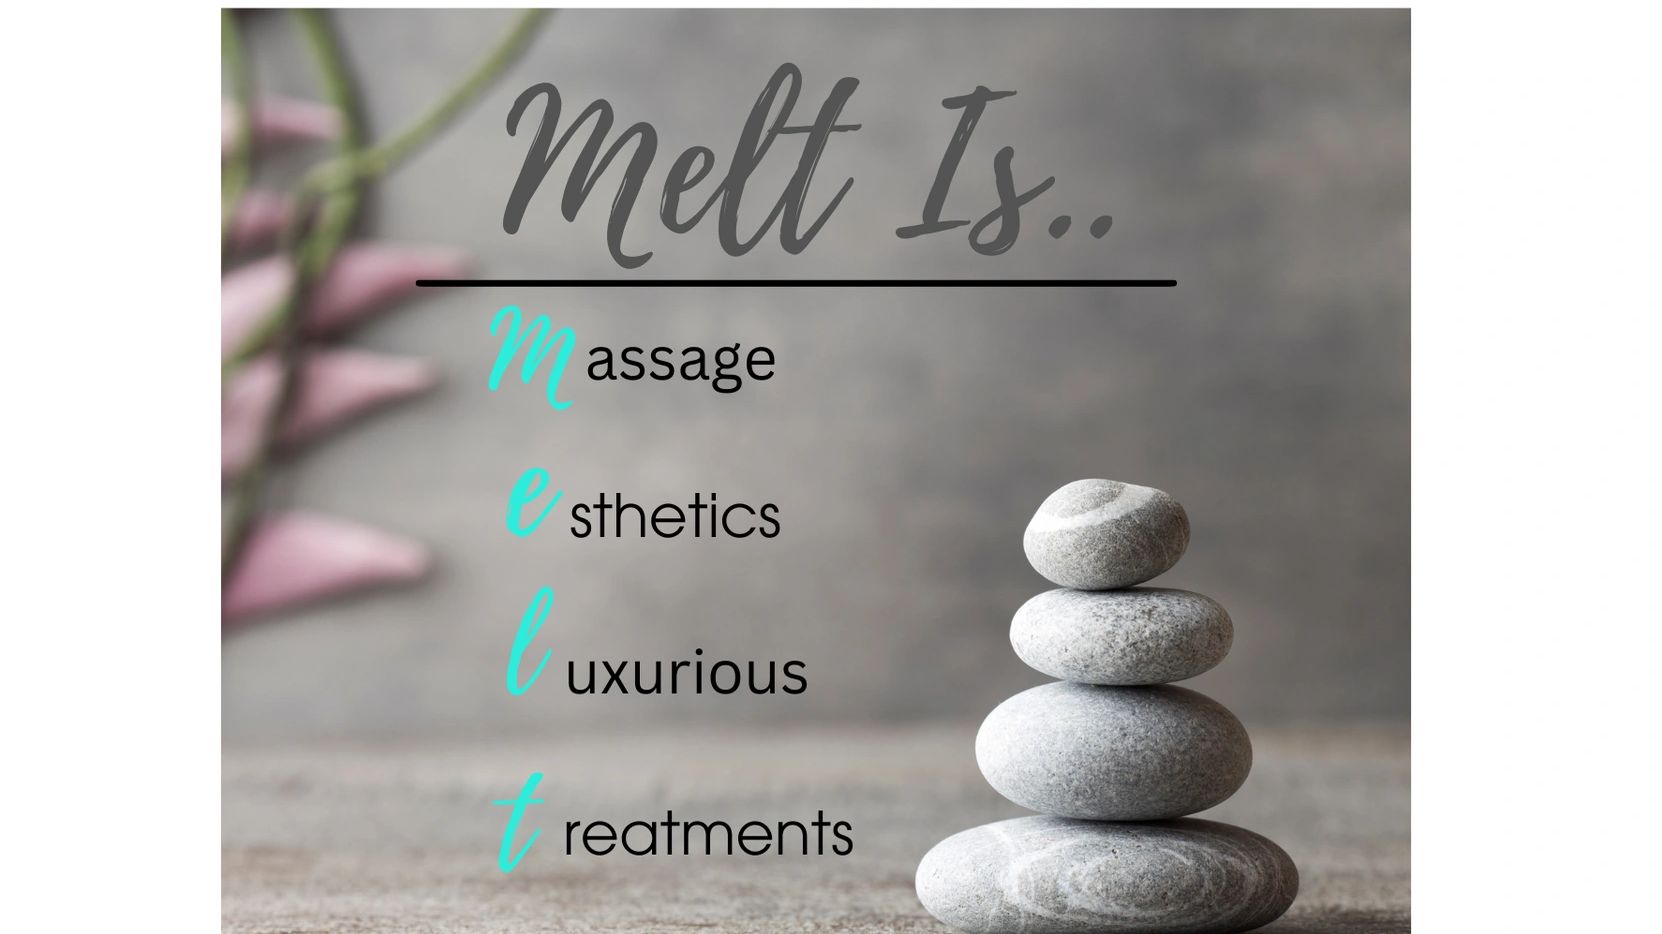 Image of stacked rocks saying "Melt Is...Massage, esthetics,luxurious treatments".